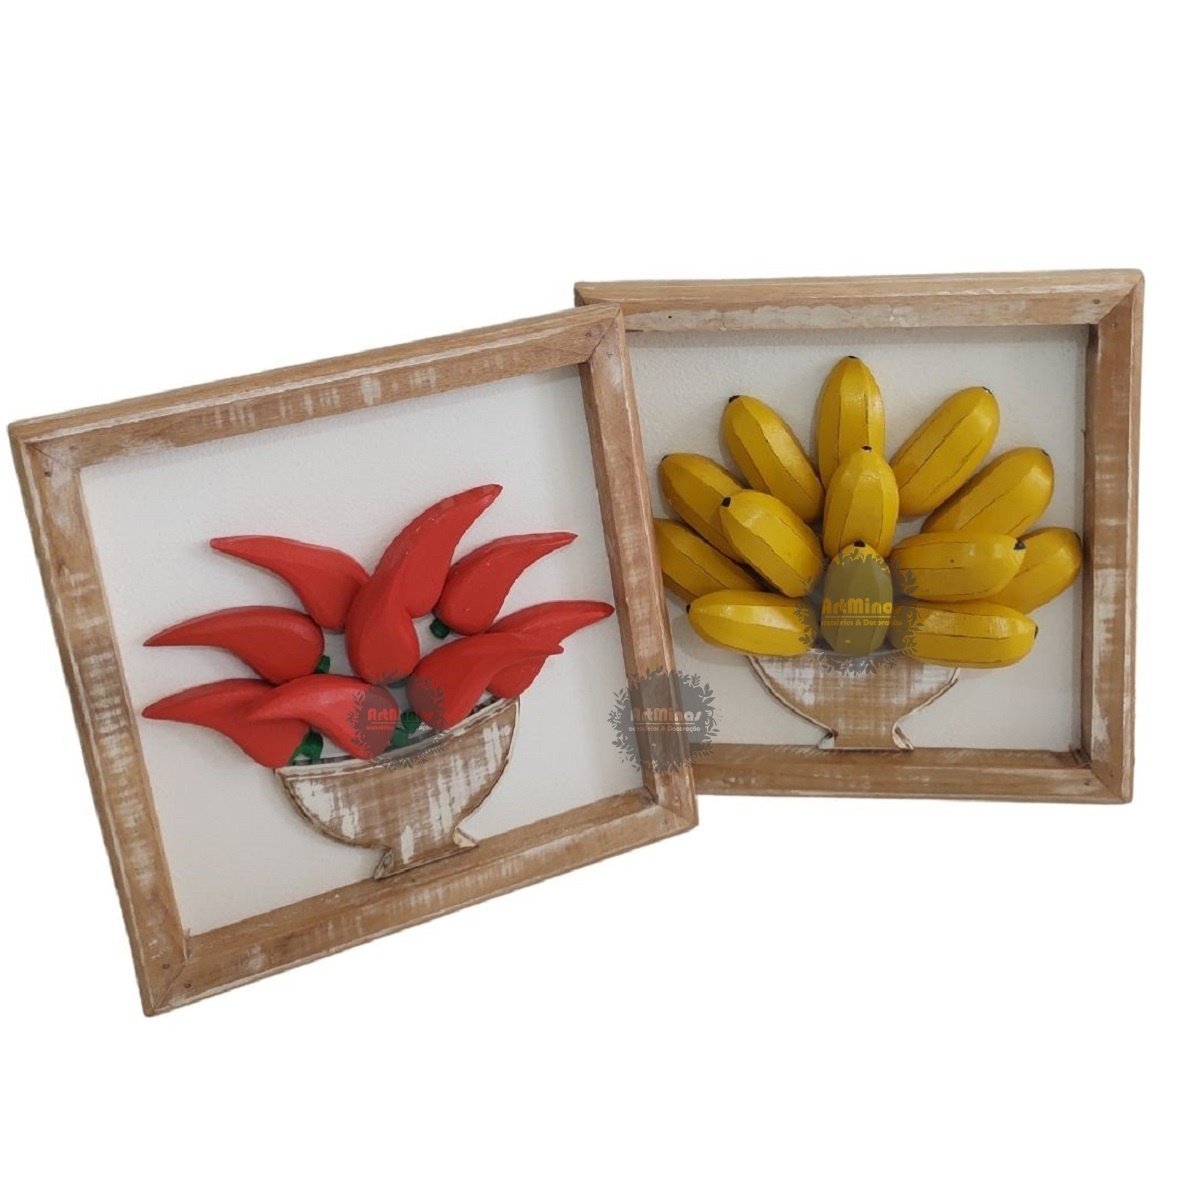 Kit quadros rústicos decorativo em madeira banana/pimenta artesanal - 1